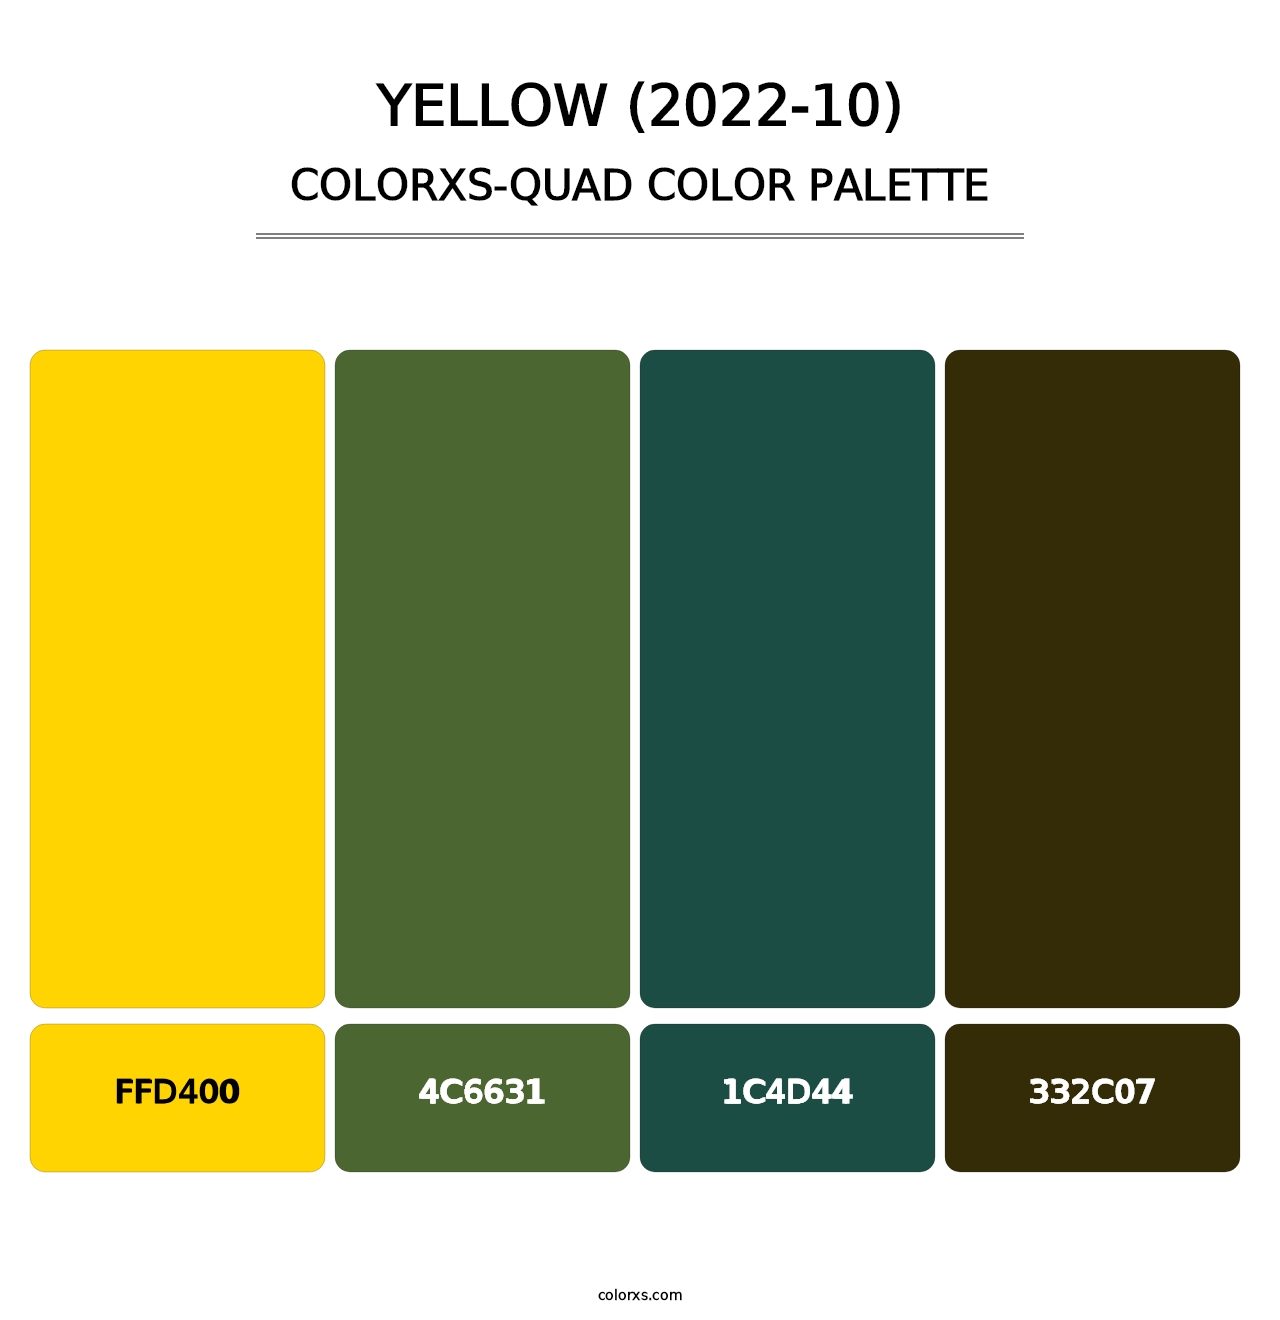 Yellow (2022-10) - Colorxs Quad Palette